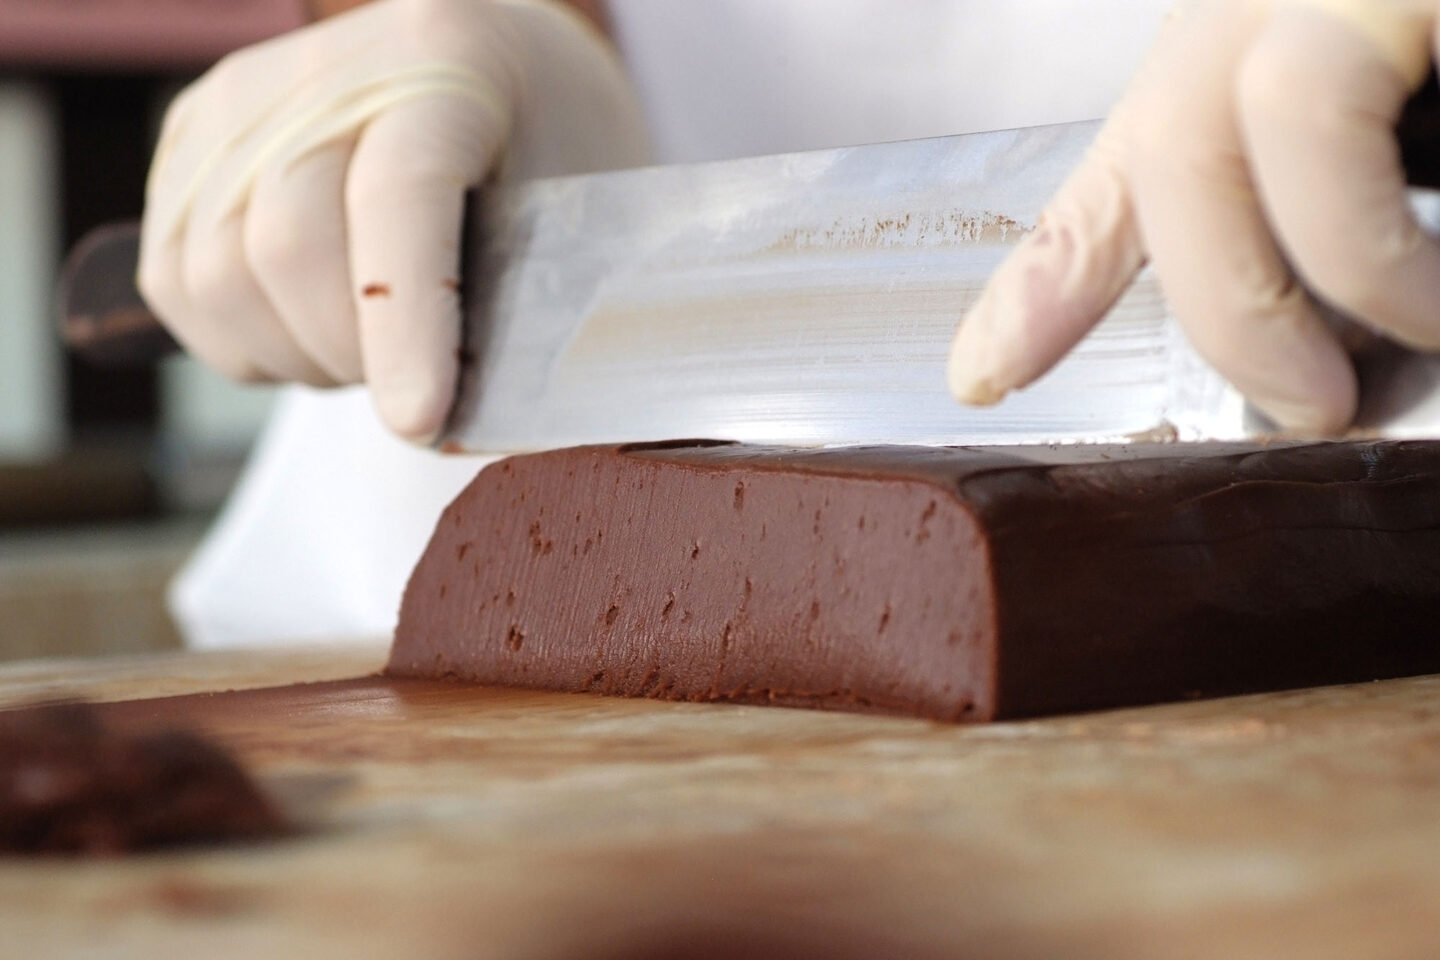 Fudge being made at Ryba's Fudge Shop - slicing the fudge